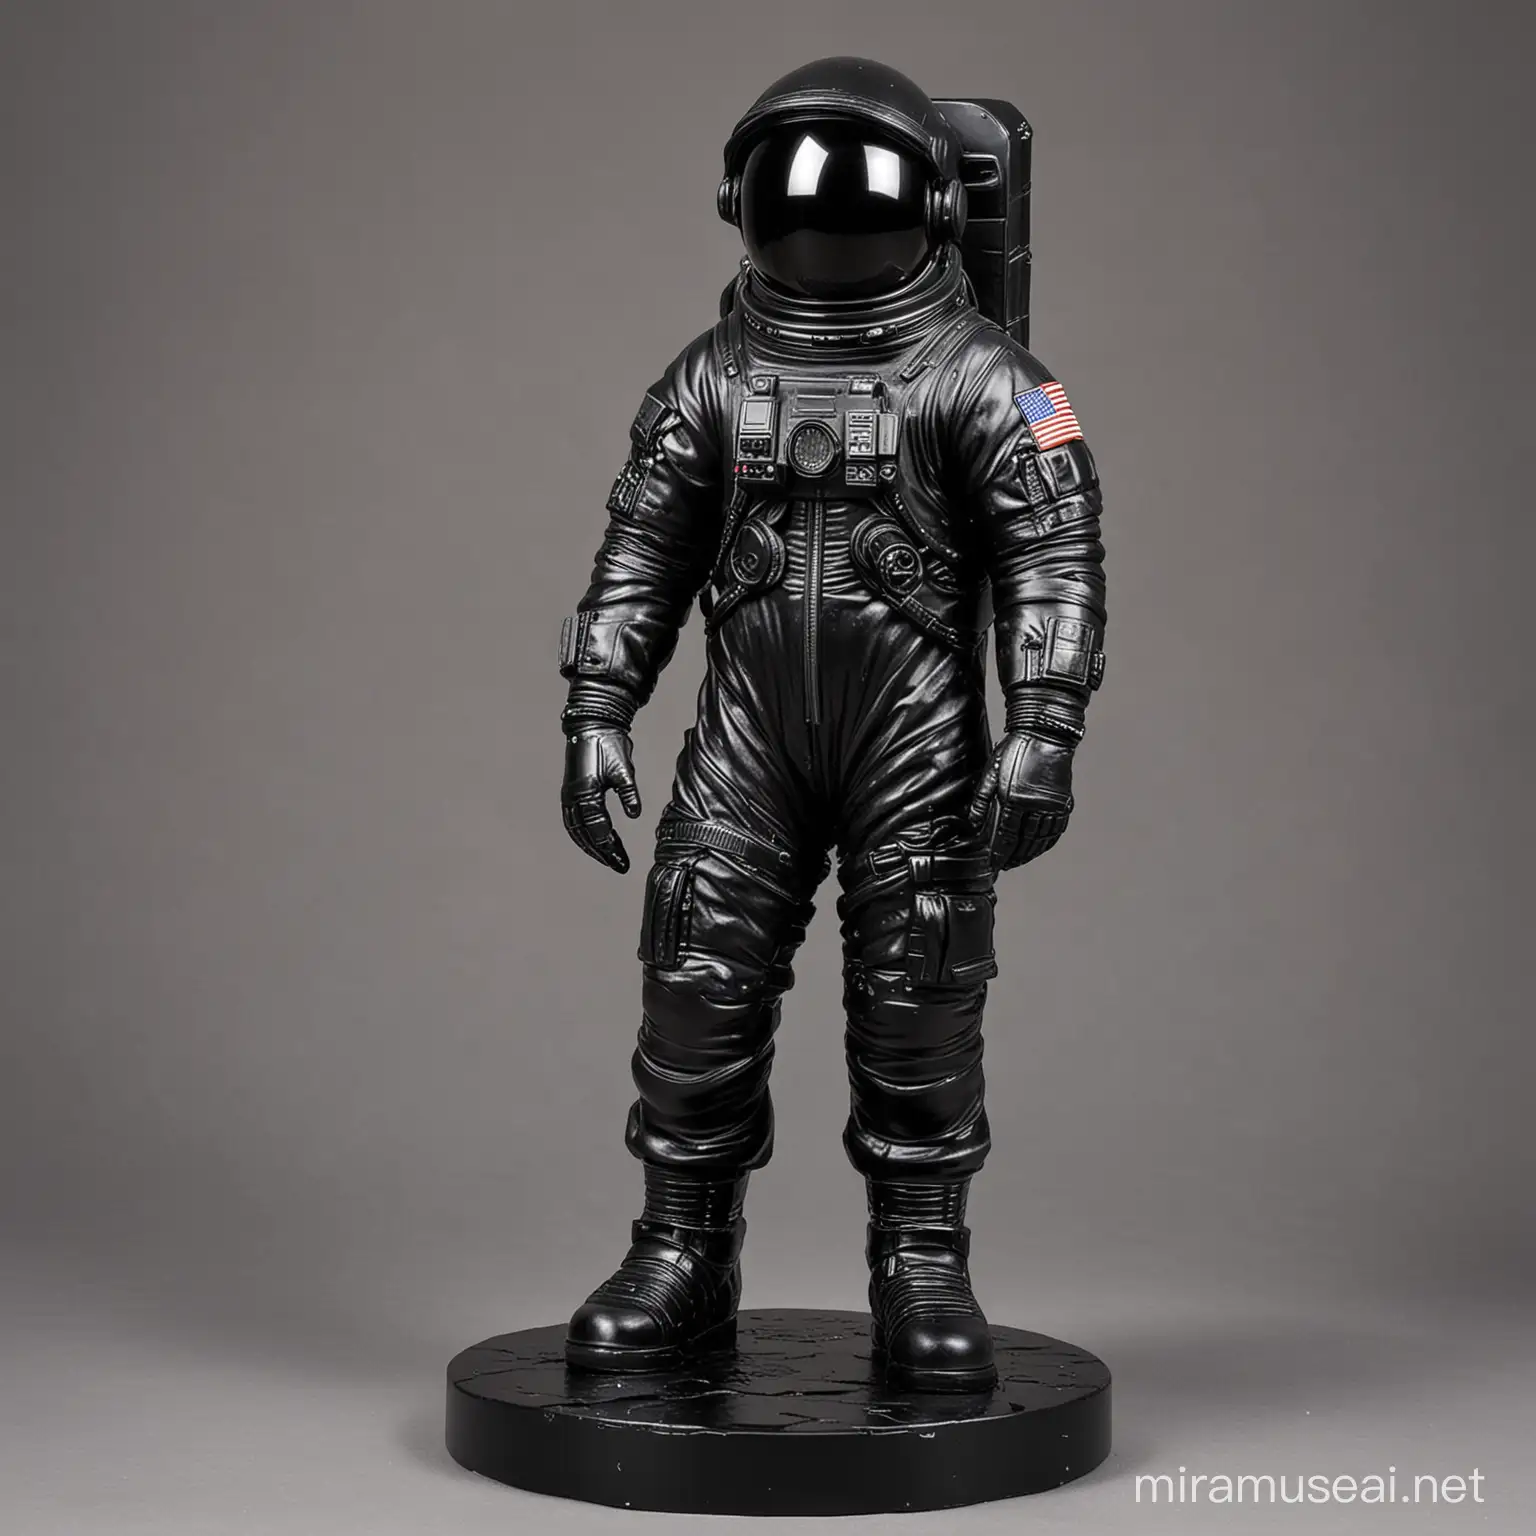 Exploring the Cosmos Astronaut Statue in Black